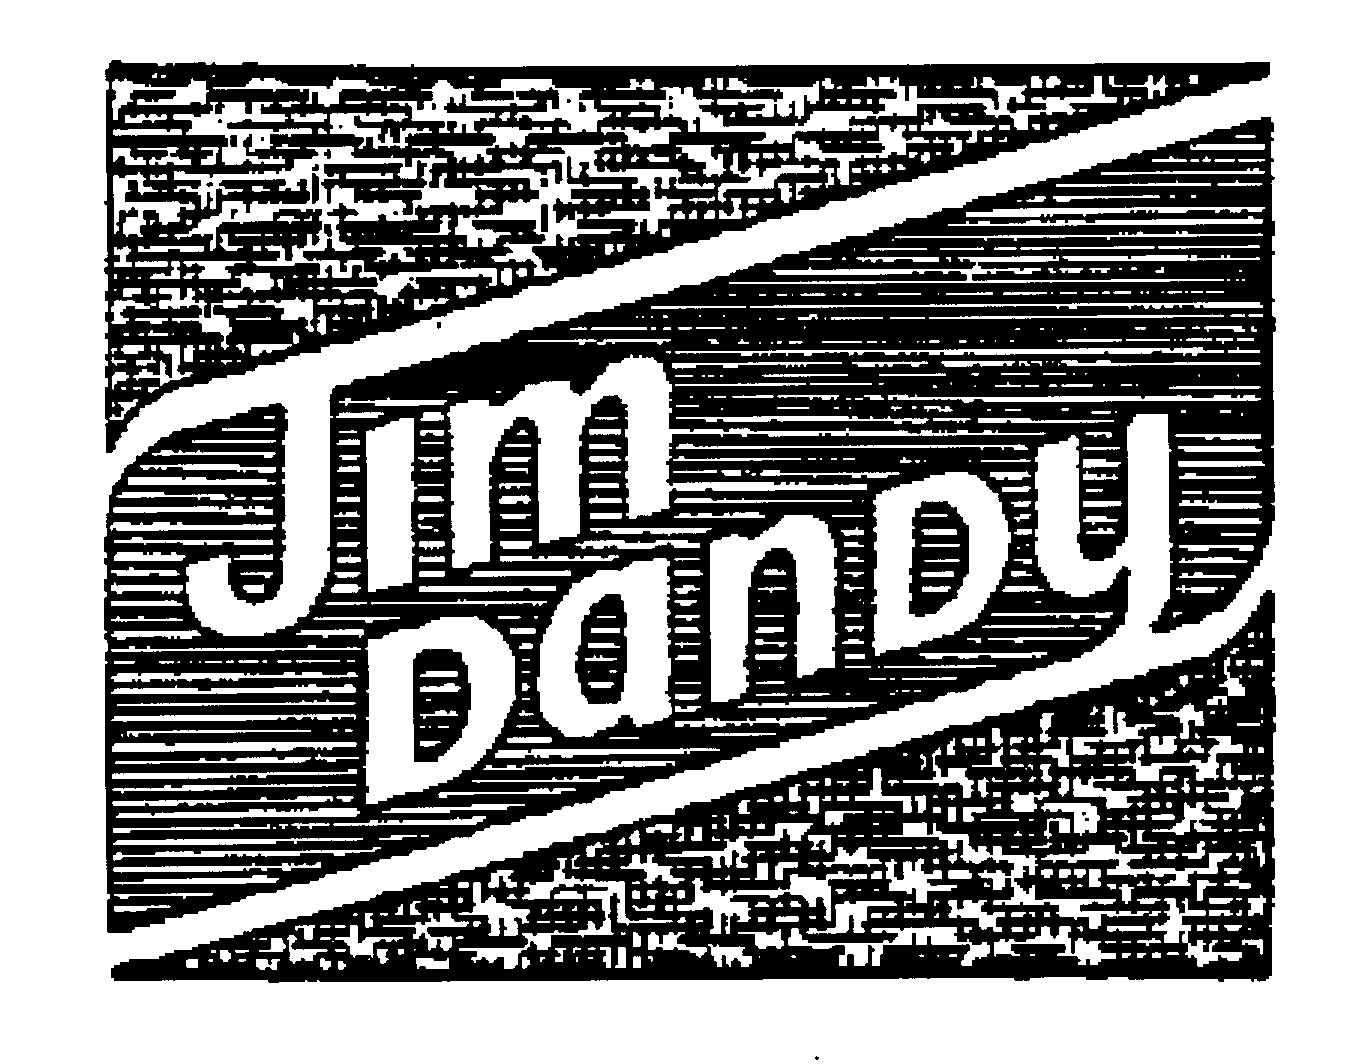 JIM DANDY